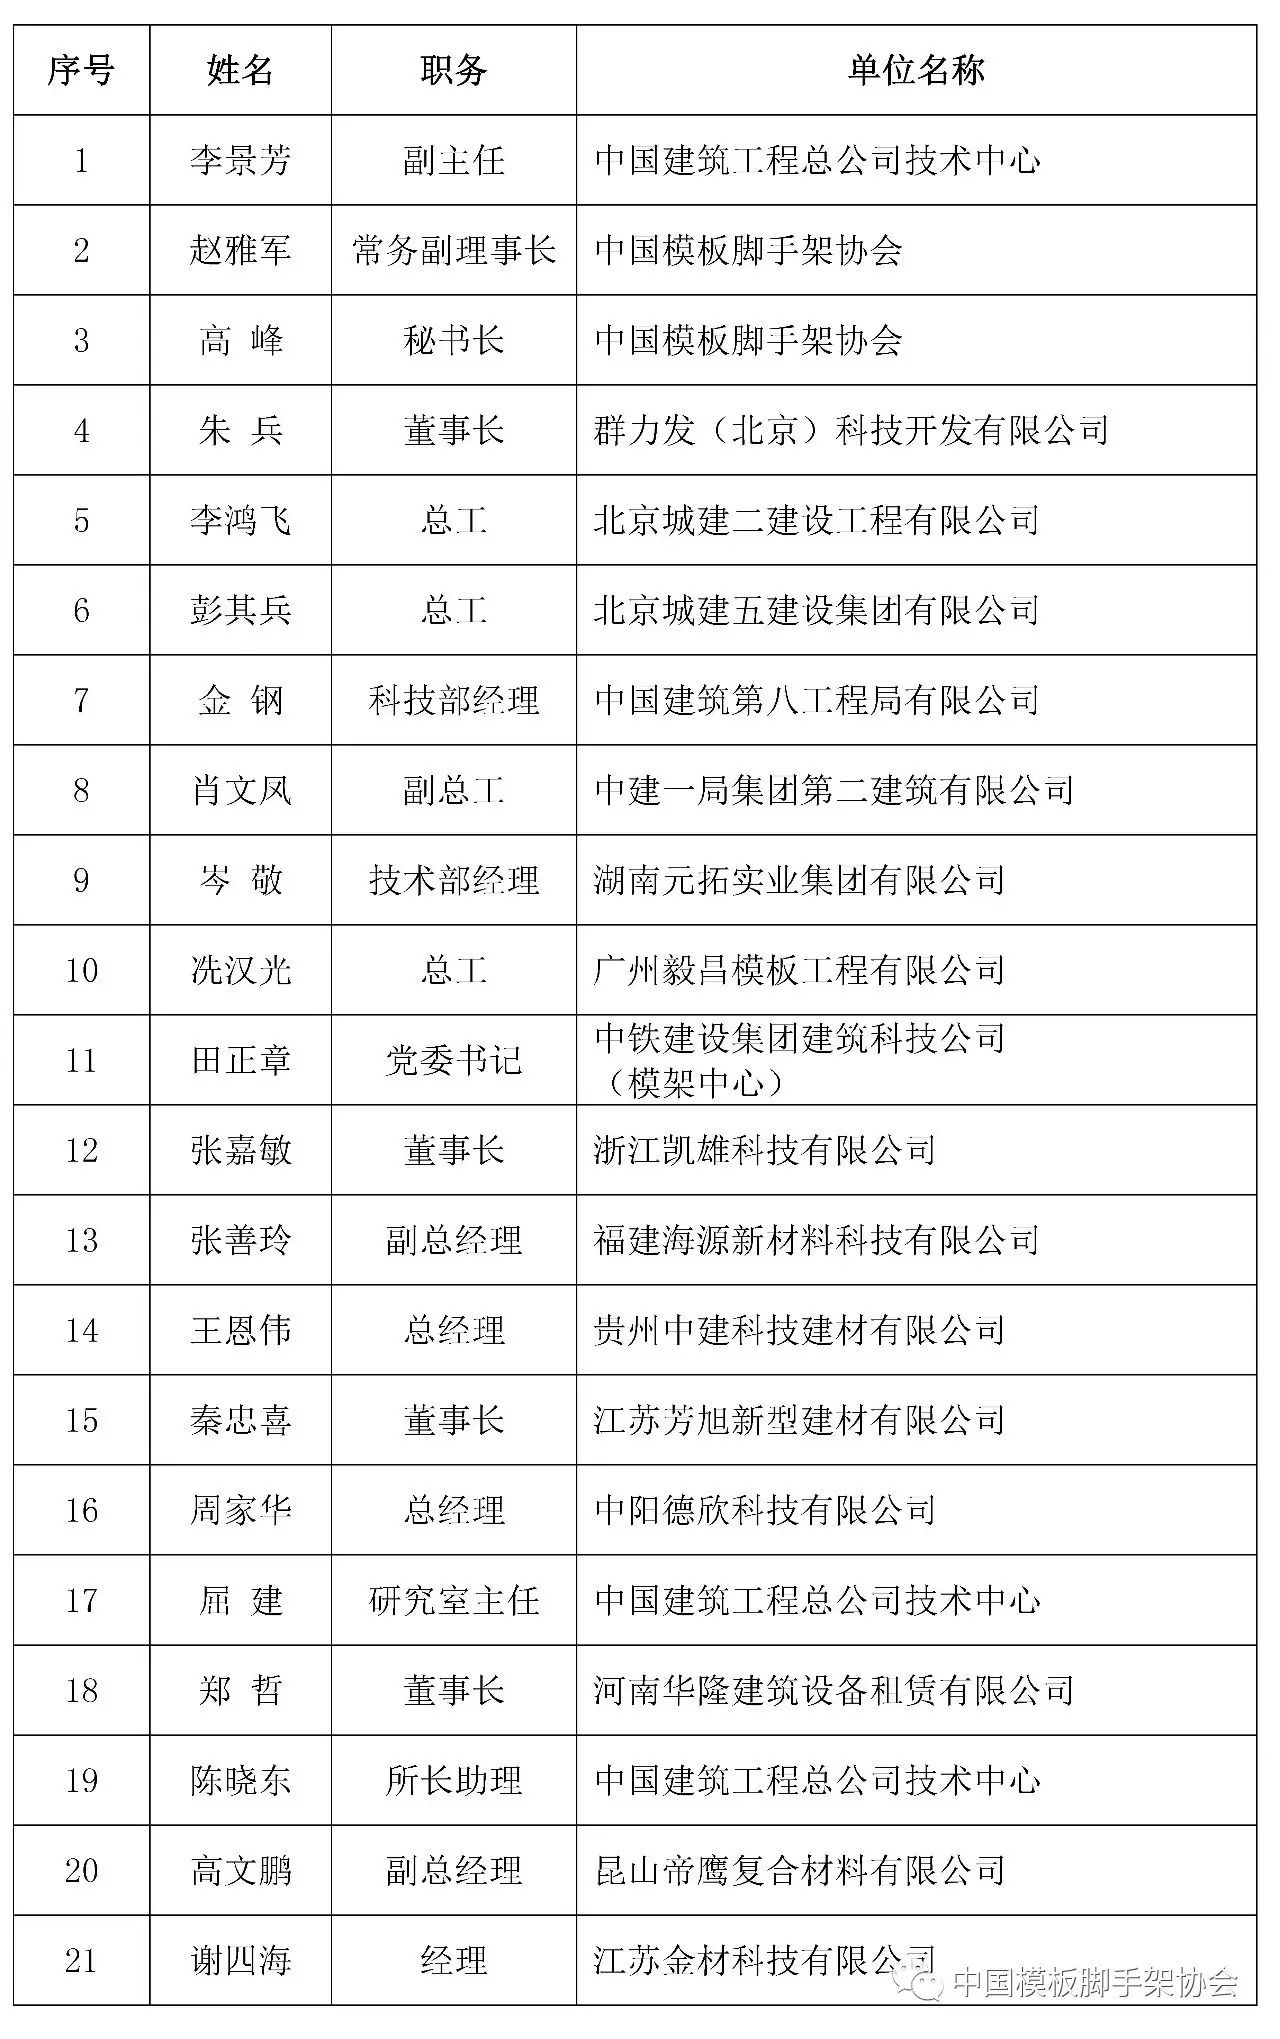 中国模板脚手架协会塑料模板专业委员会2016年度会议在京顺利召开